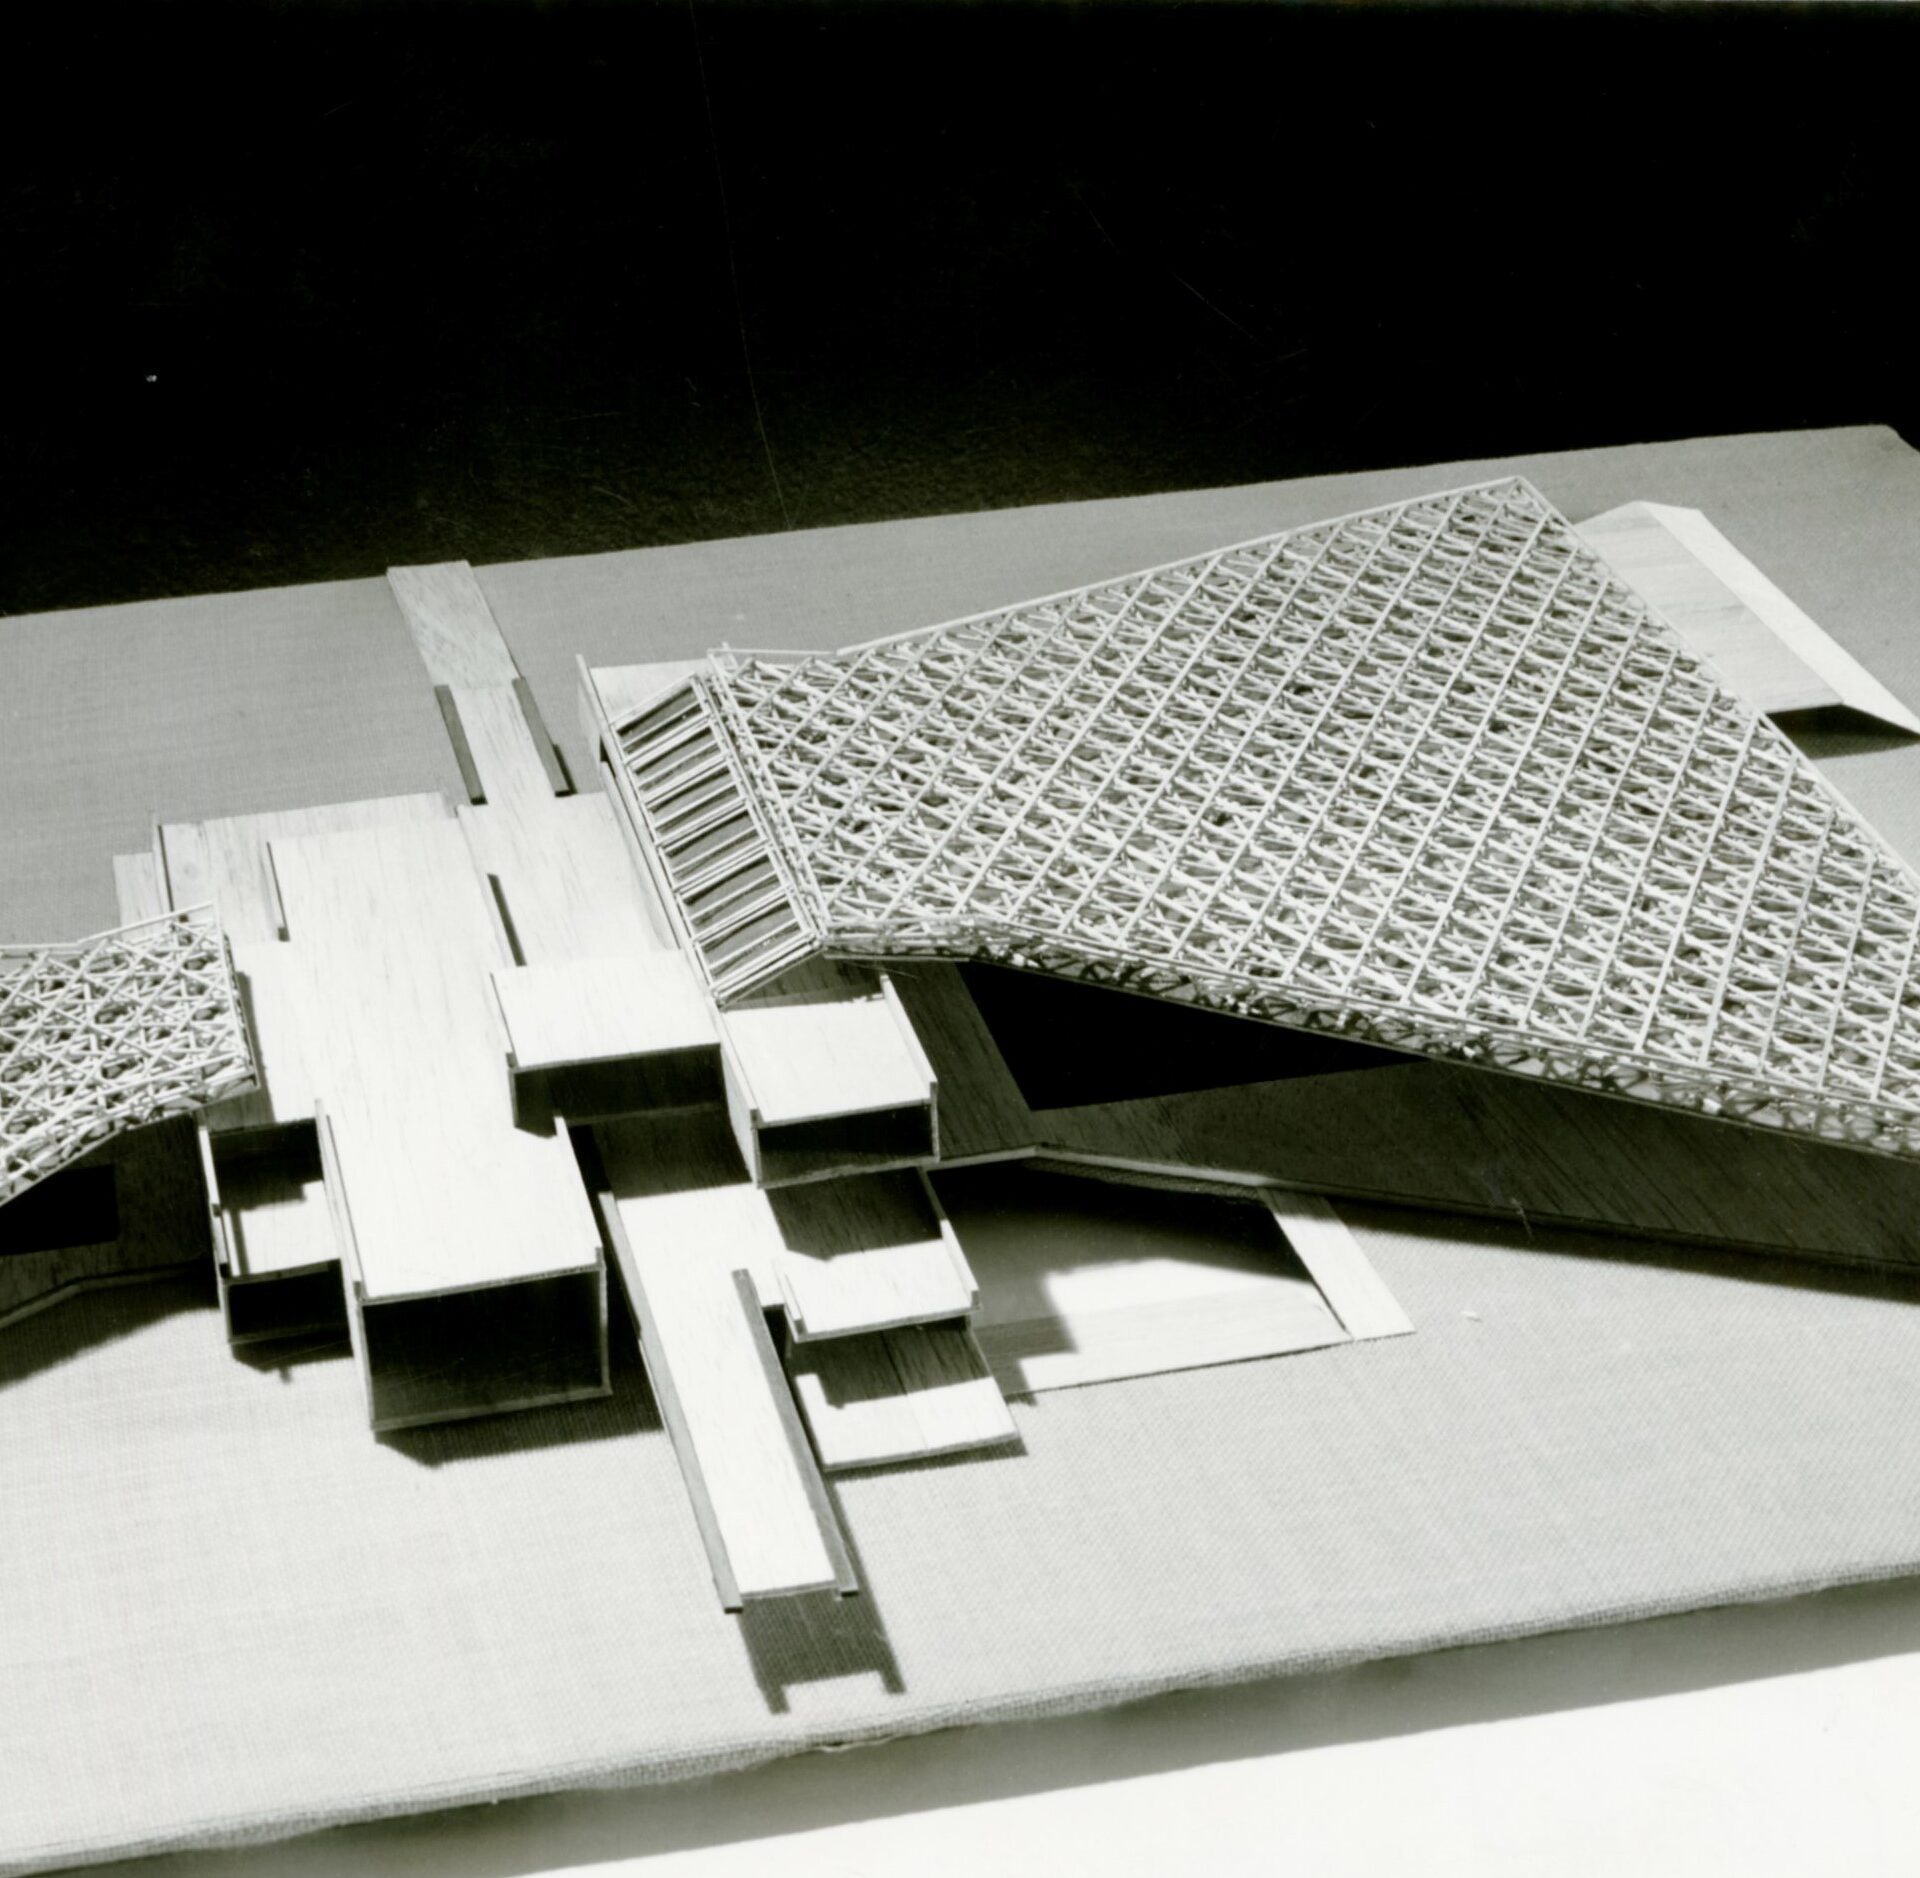 Maketa kopališča v Tivoliju v Ljubljani, nagrajeni in tudi izvedeni projekt iz urbanistično arhitekturnega natečaja leta 1969. Foto Janez Kališnik, iz arhitekturne zbirke MAO